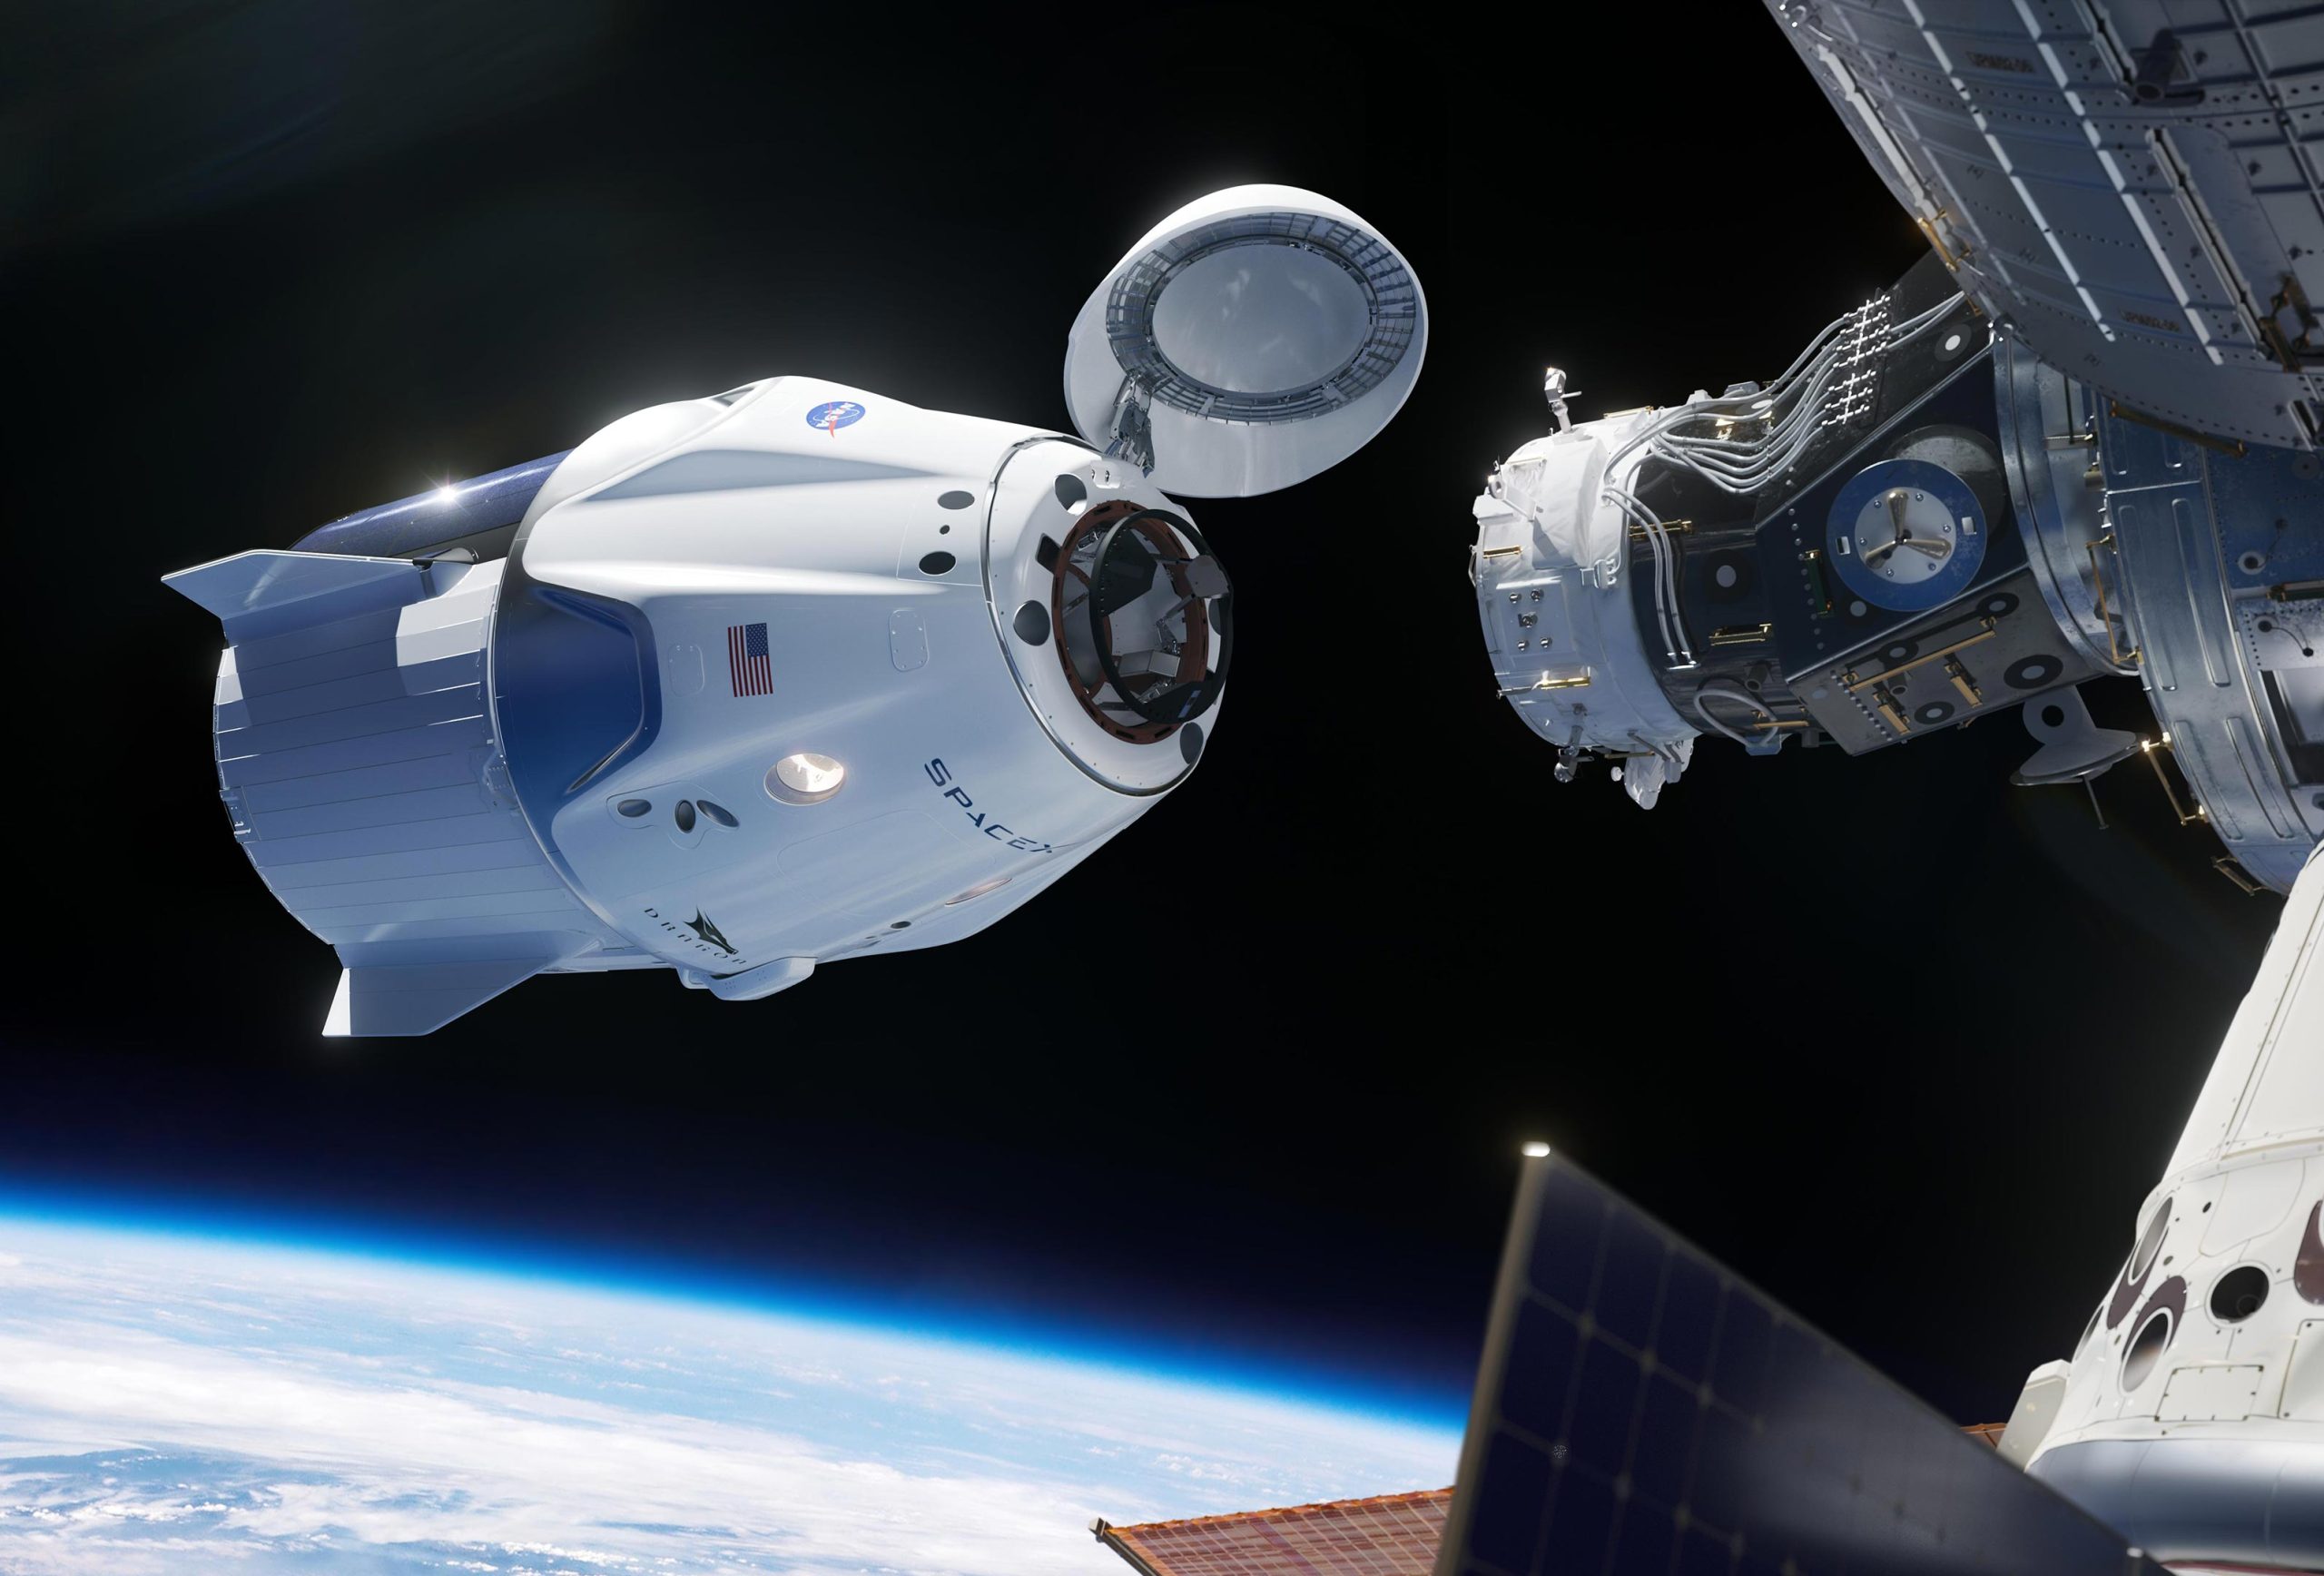 La prima missione speciale dell’astronauta lanciata oggi sulla stazione spaziale: come guardare la trasmissione in diretta